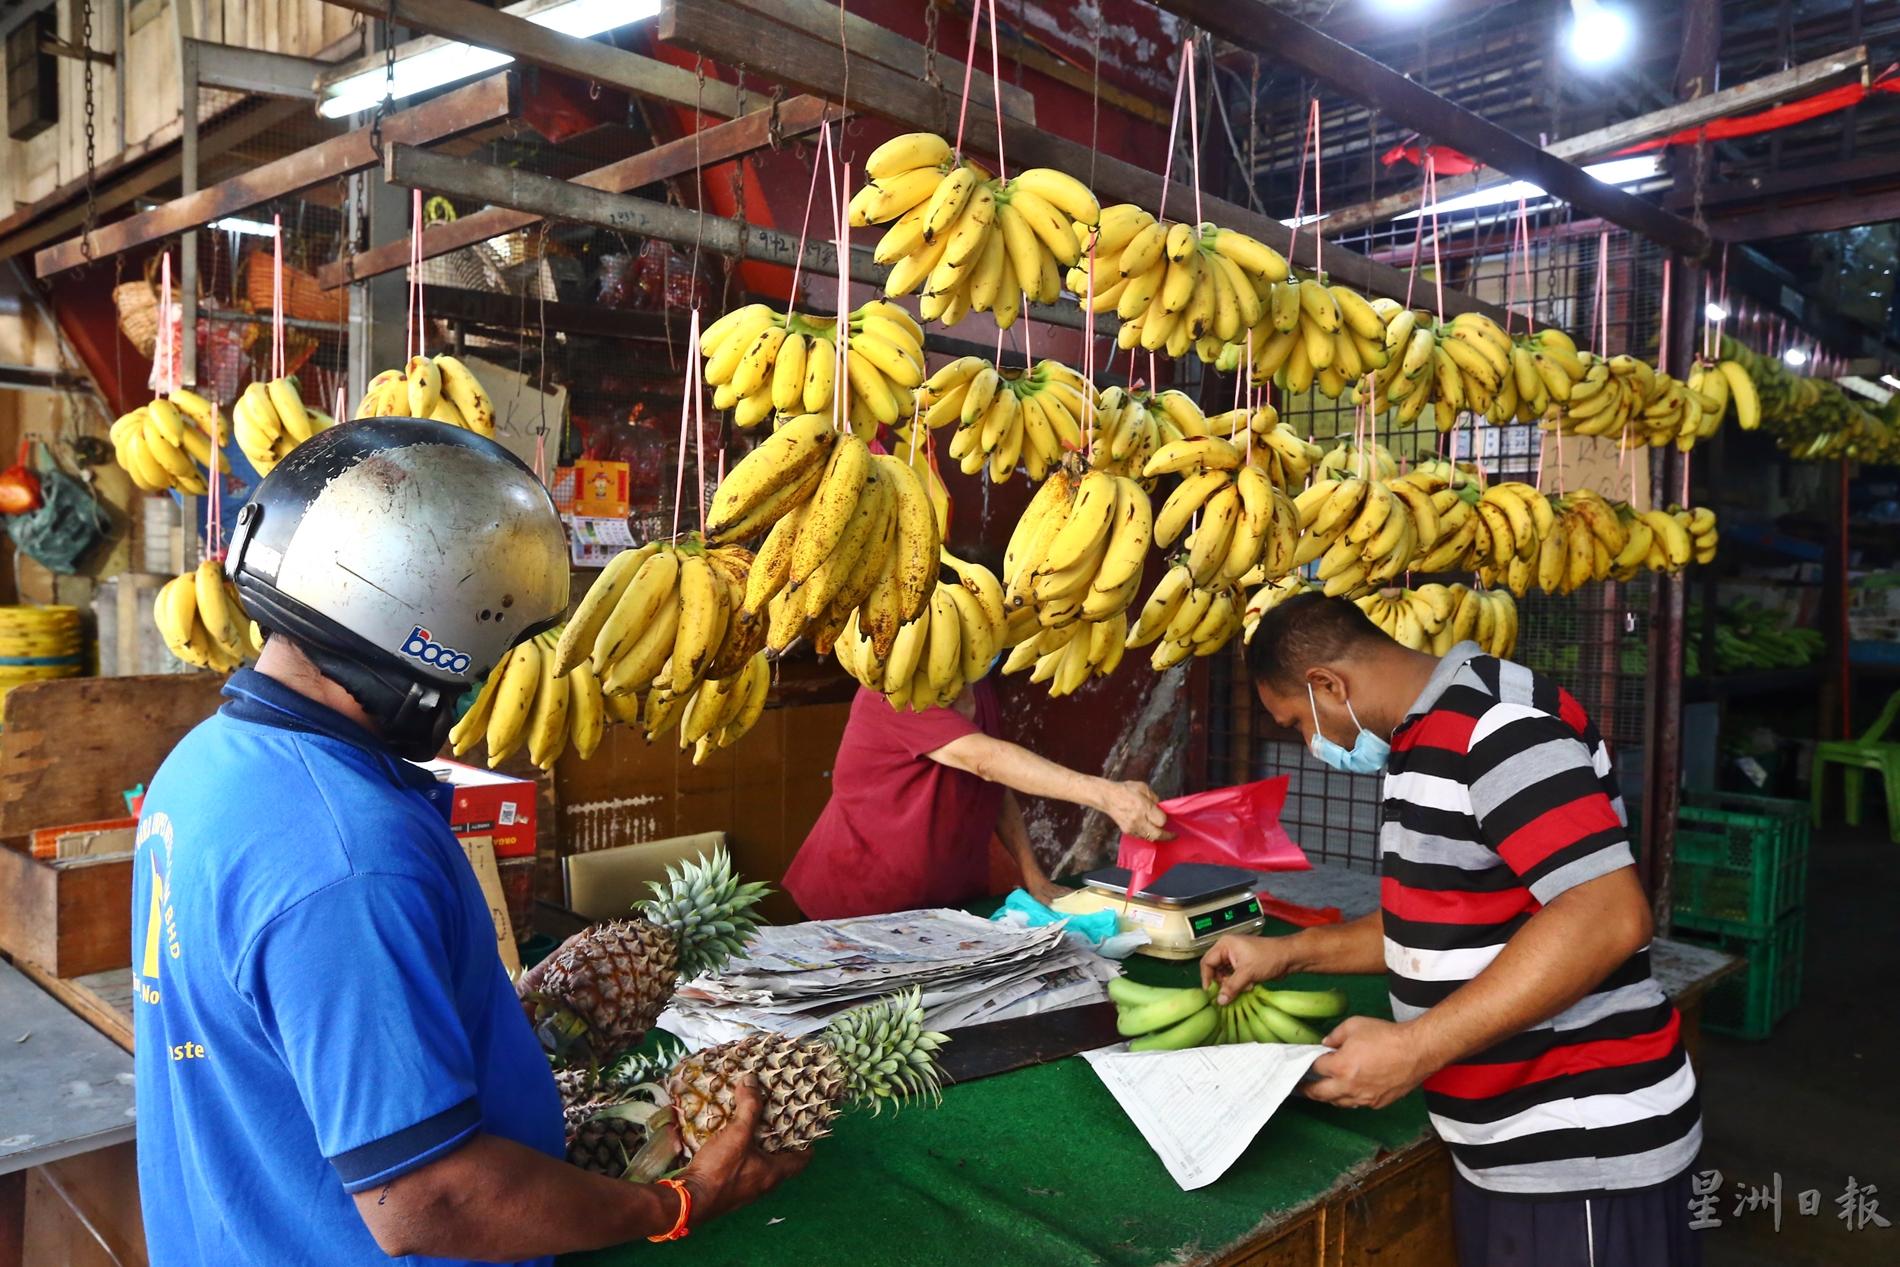 有读者向《大都会》社区报投诉本地香蕉及木瓜大起价，有的每公斤卖到6令吉。

